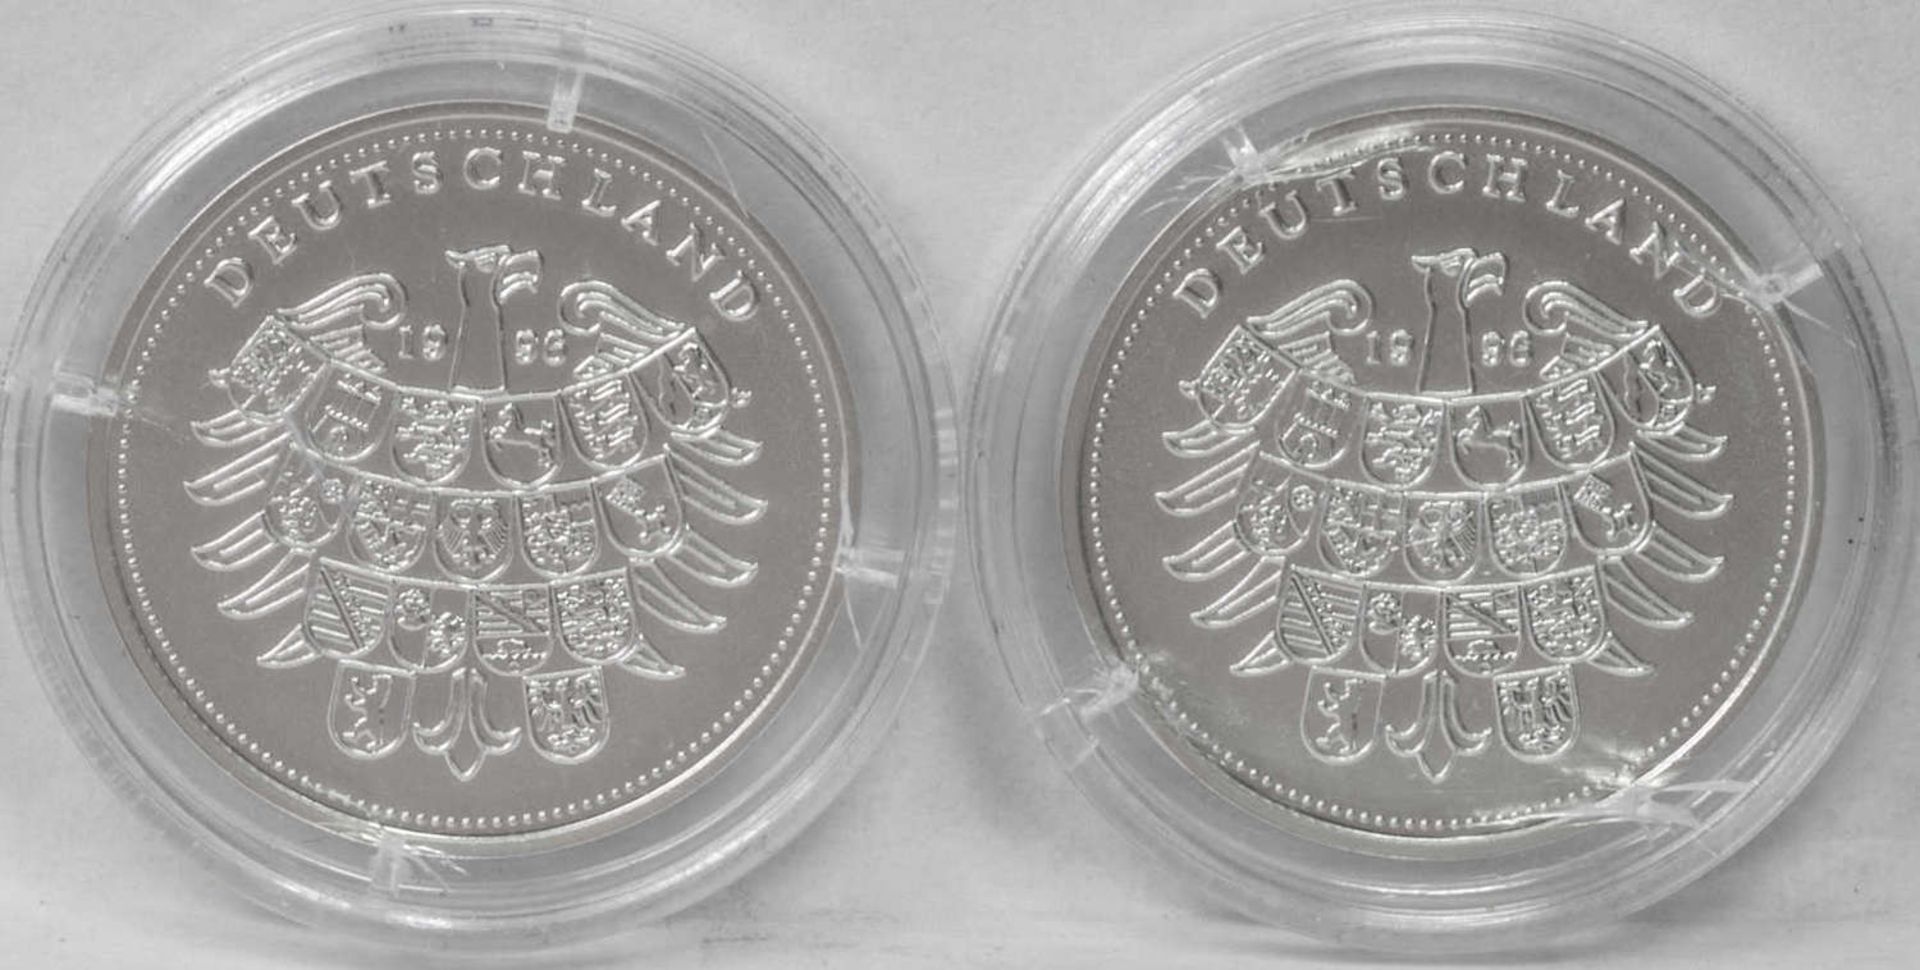 Deutschland 1996, zwei Silber - Medaillen: "Schiller" und "Beethoven". Gewicht: je ca. 10,1 g. - Bild 2 aus 2